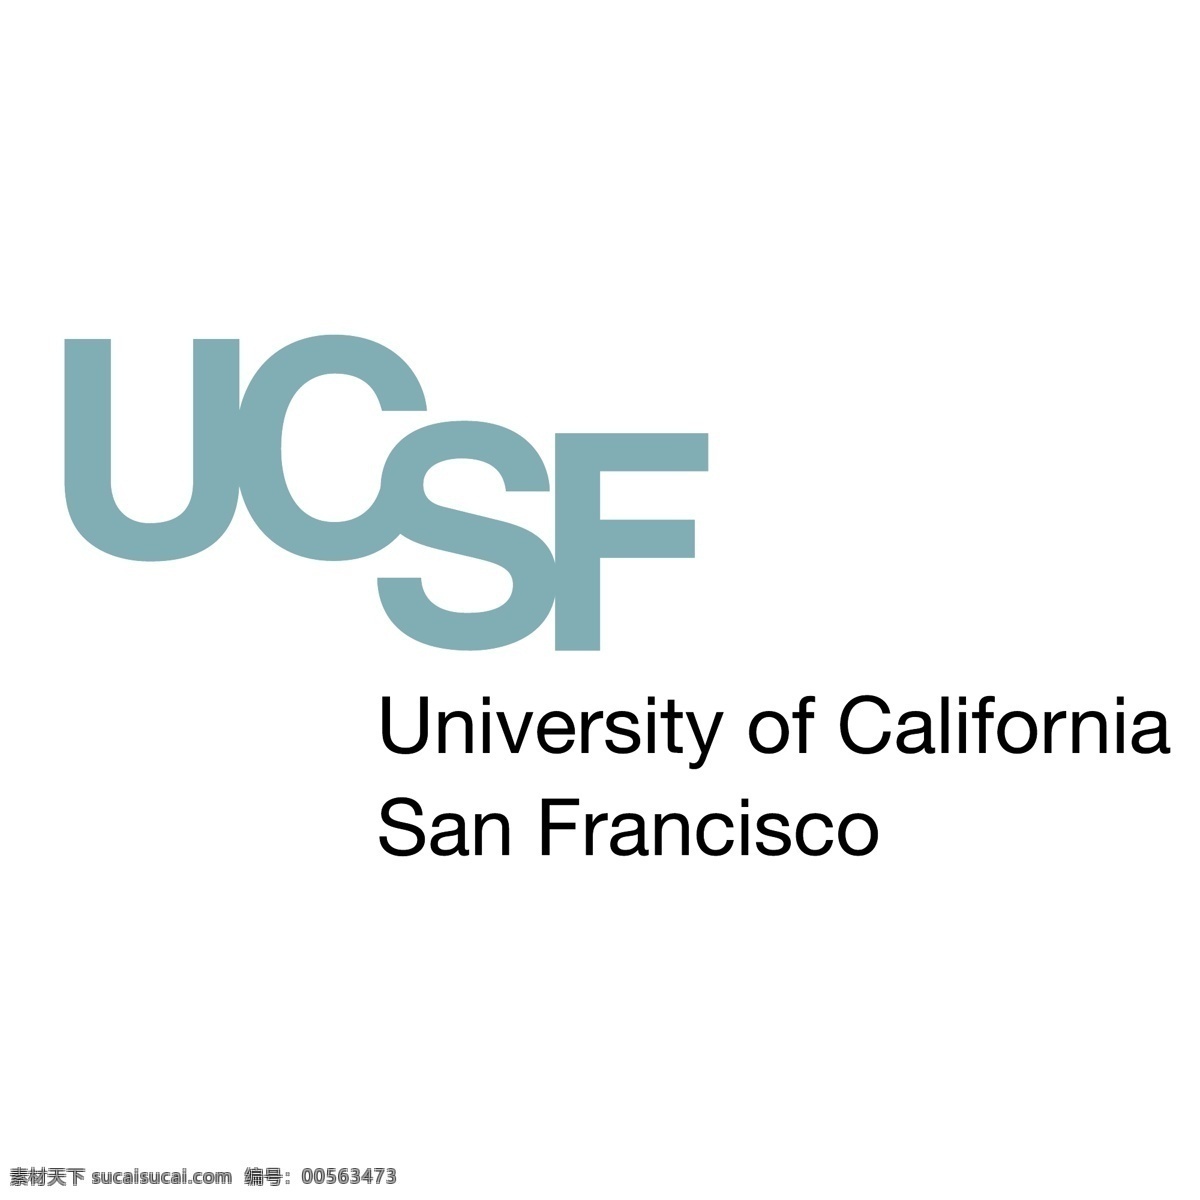 加州 大学 旧金山 分校 标识 公司 免费 品牌 品牌标识 商标 矢量标志下载 免费矢量标识 矢量 psd源文件 logo设计